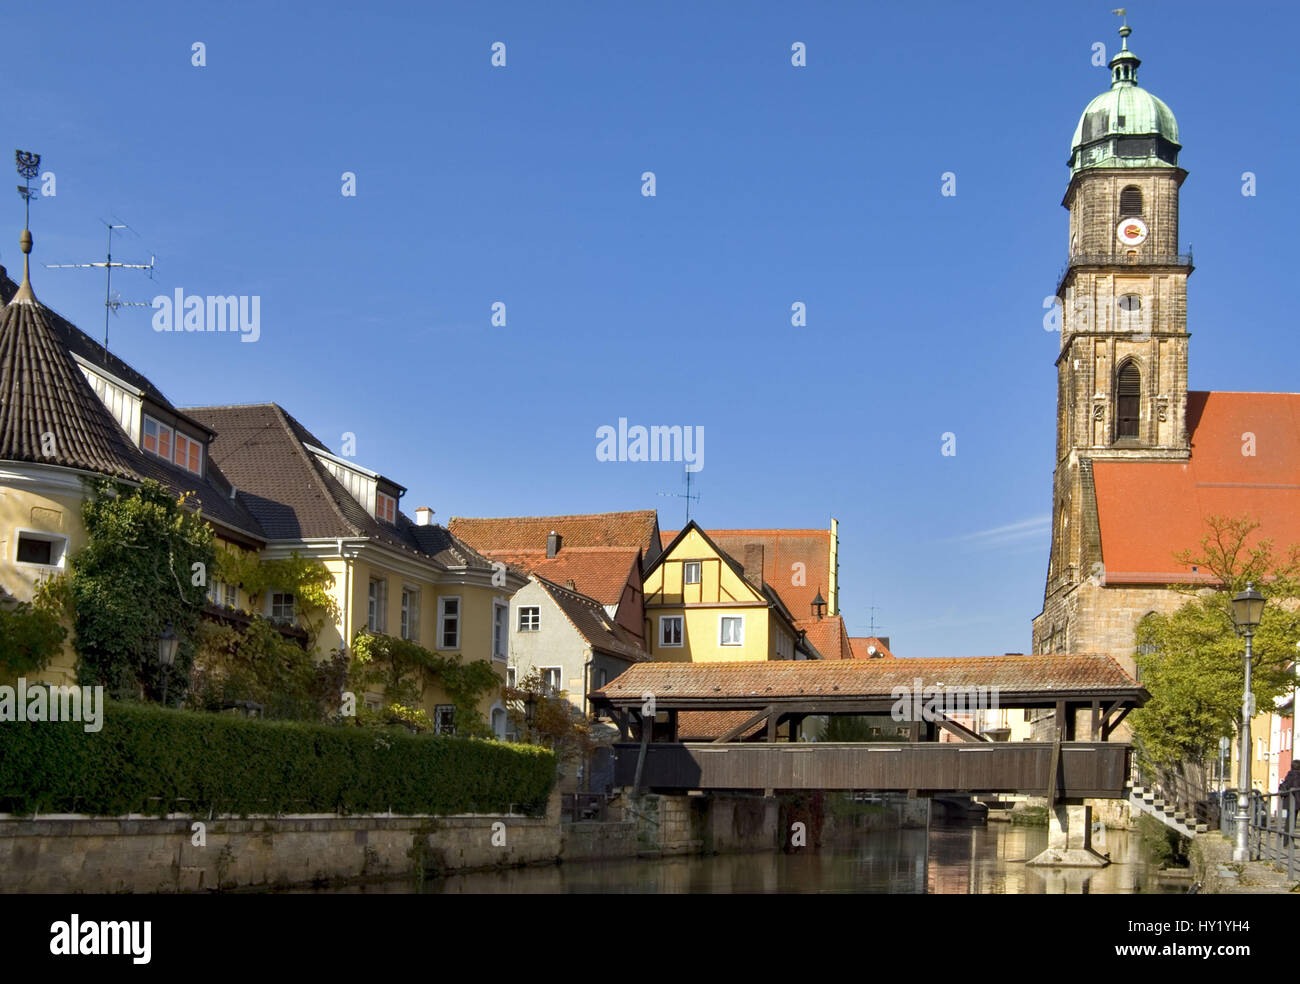 Blick ueber den Fluss Vils auf die St. Martins Kirche in der Alstadt von Amberg in Bayern. Stock Photo